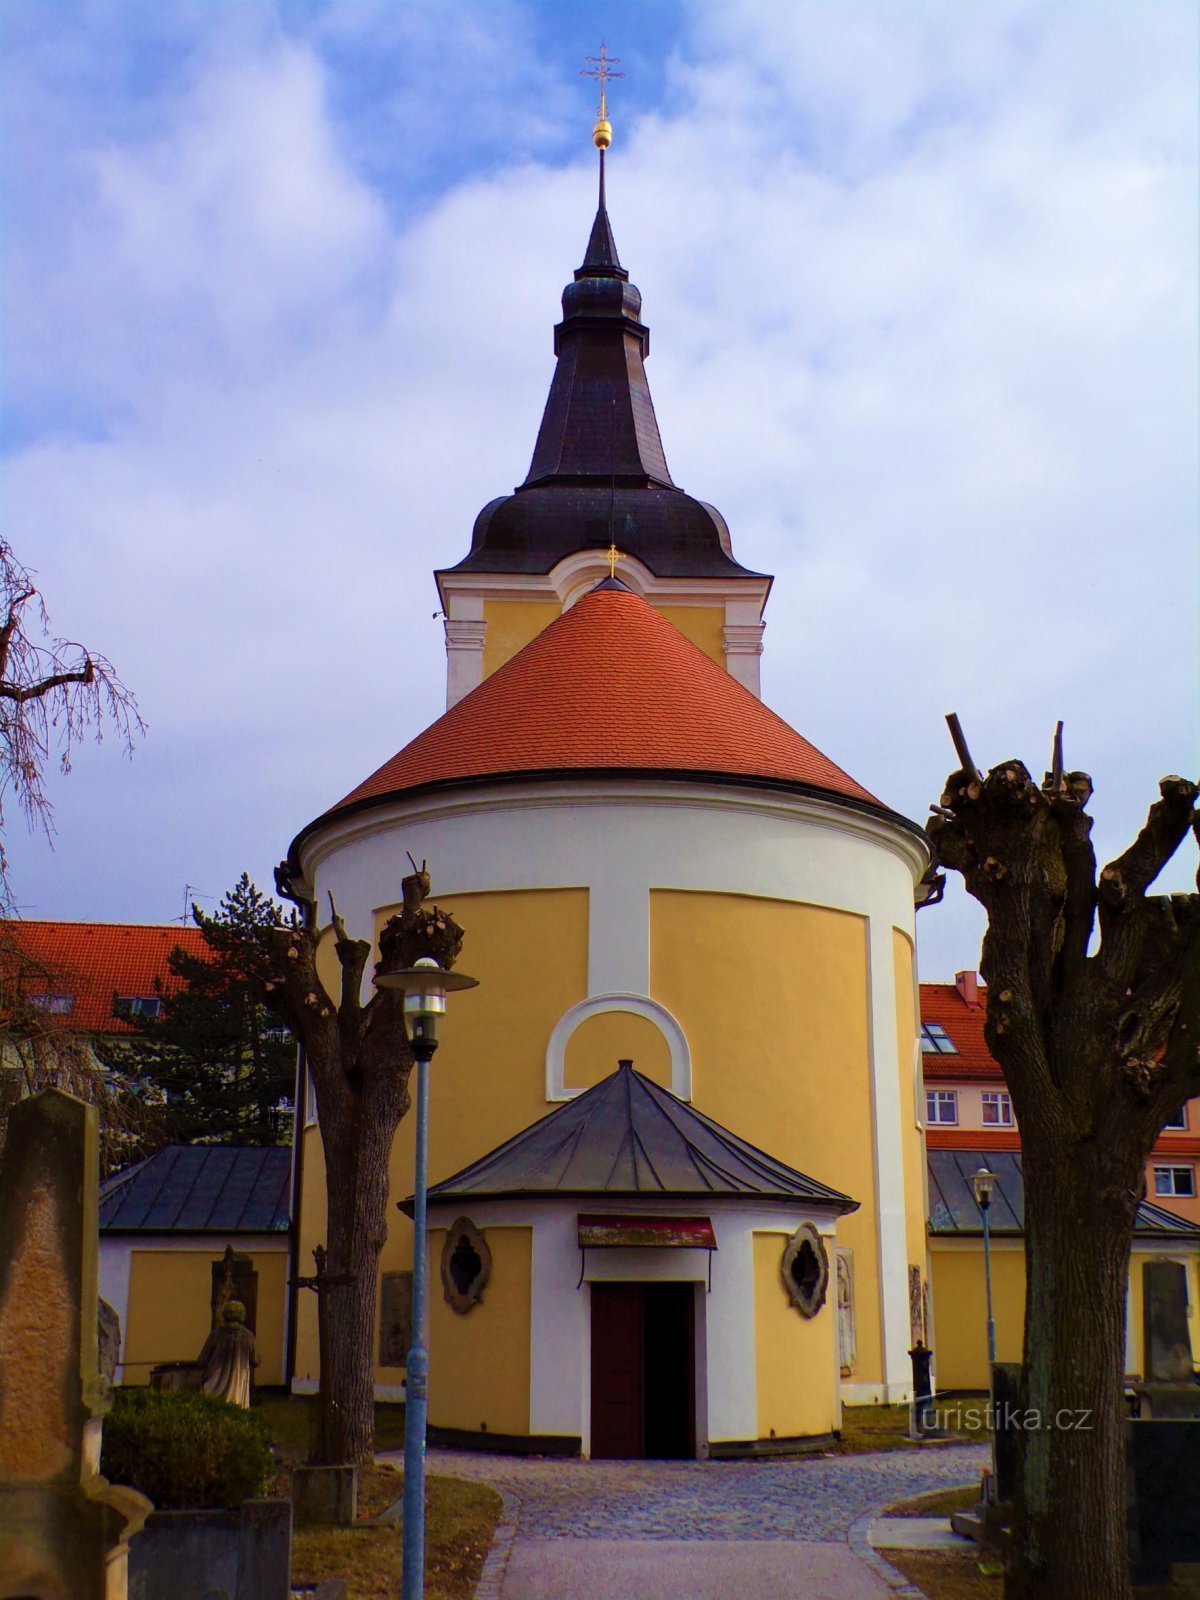 Cimitero Chiesa della Madonna Addolorata (Jičín, 4.3.2022/XNUMX/XNUMX)